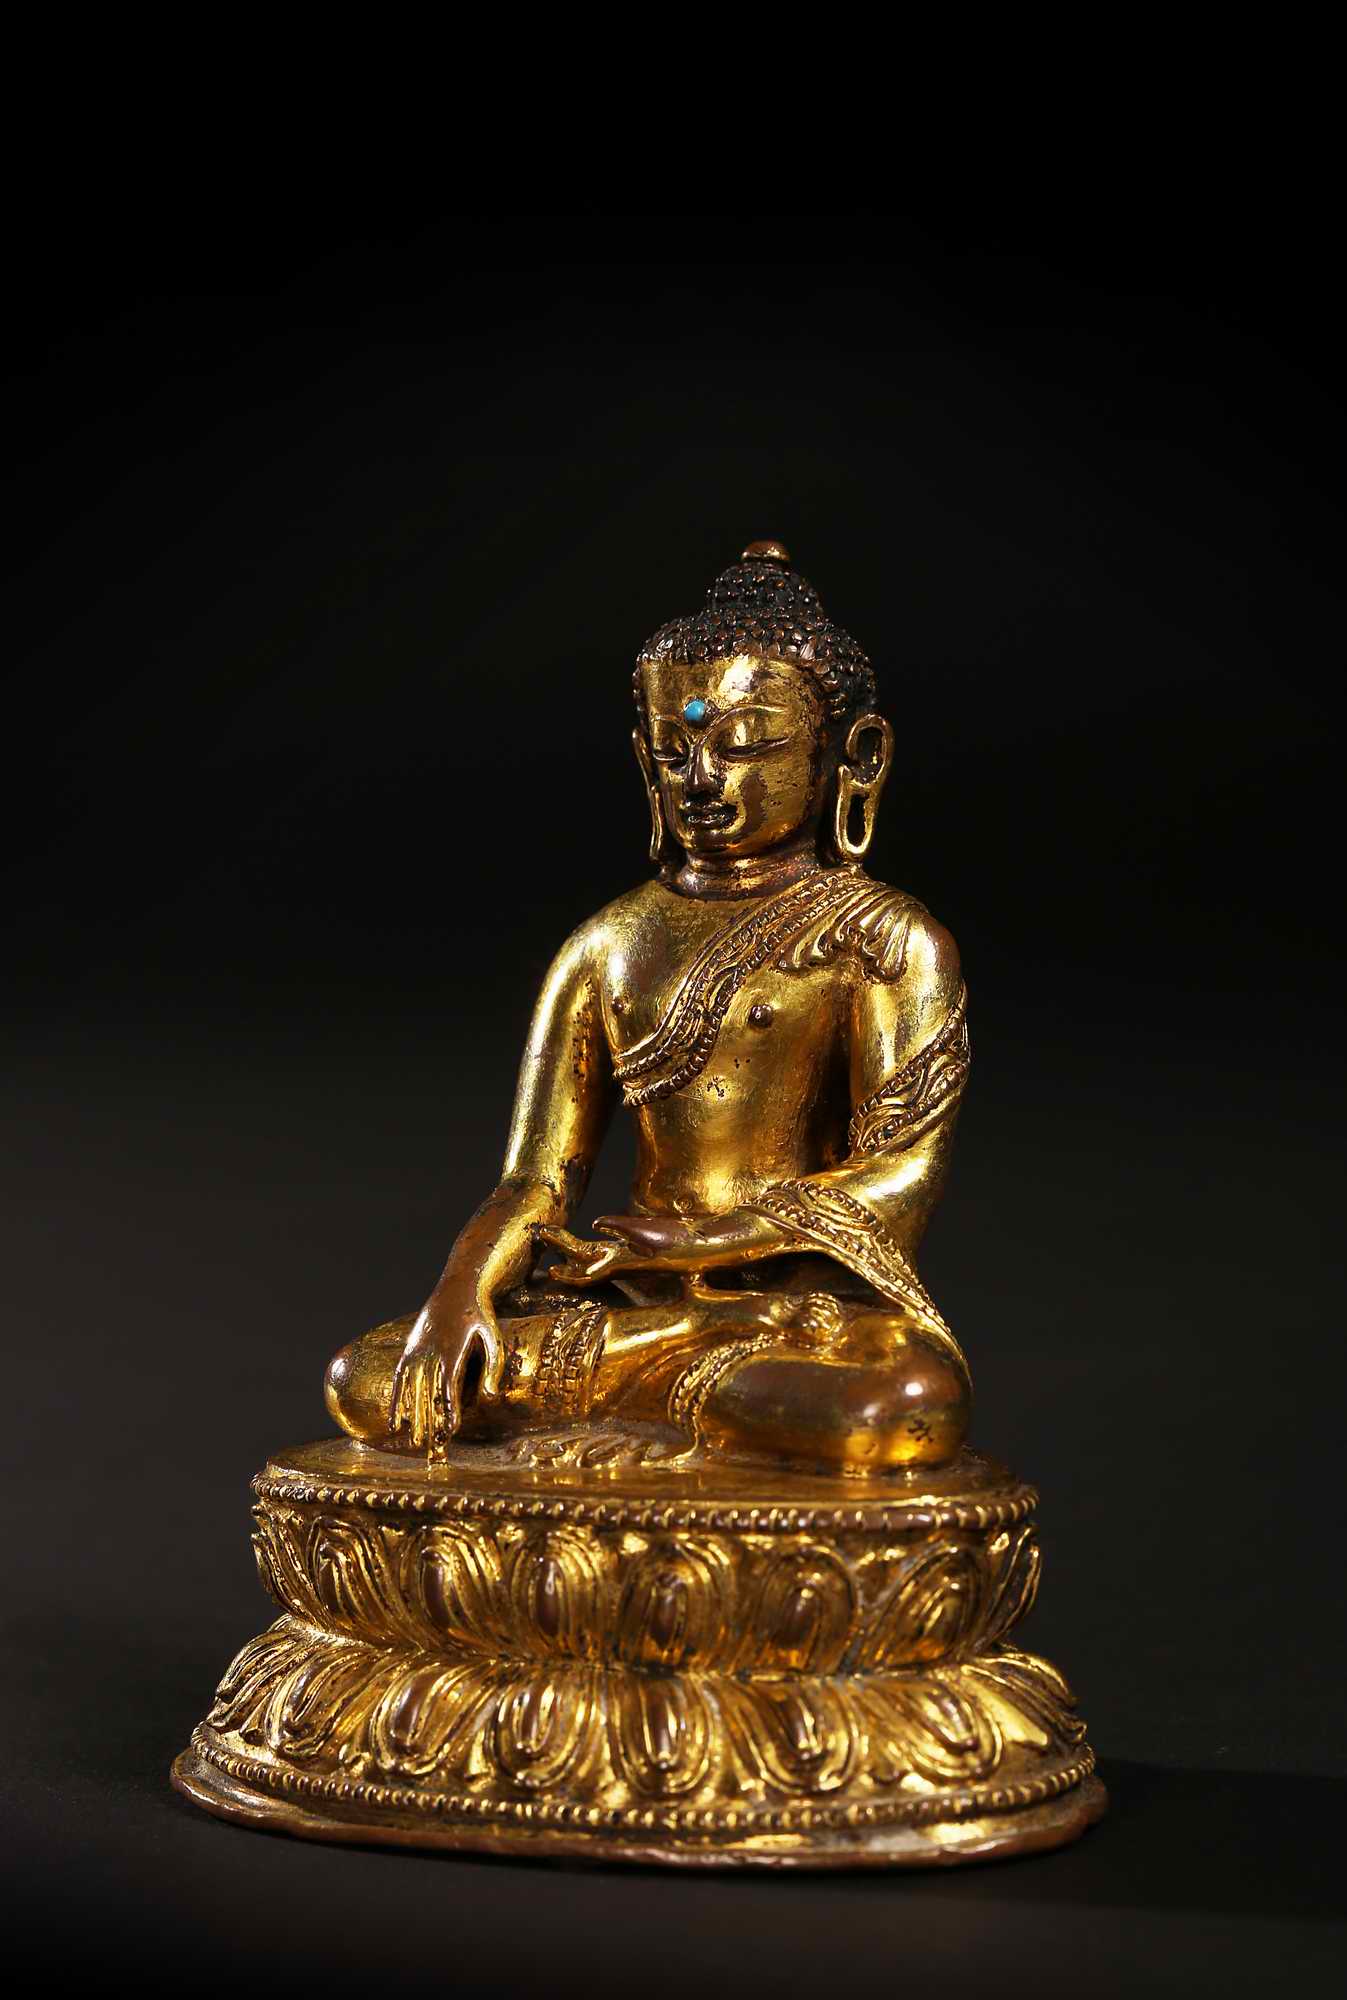 尼泊尔风格 15世纪释迦牟尼佛像